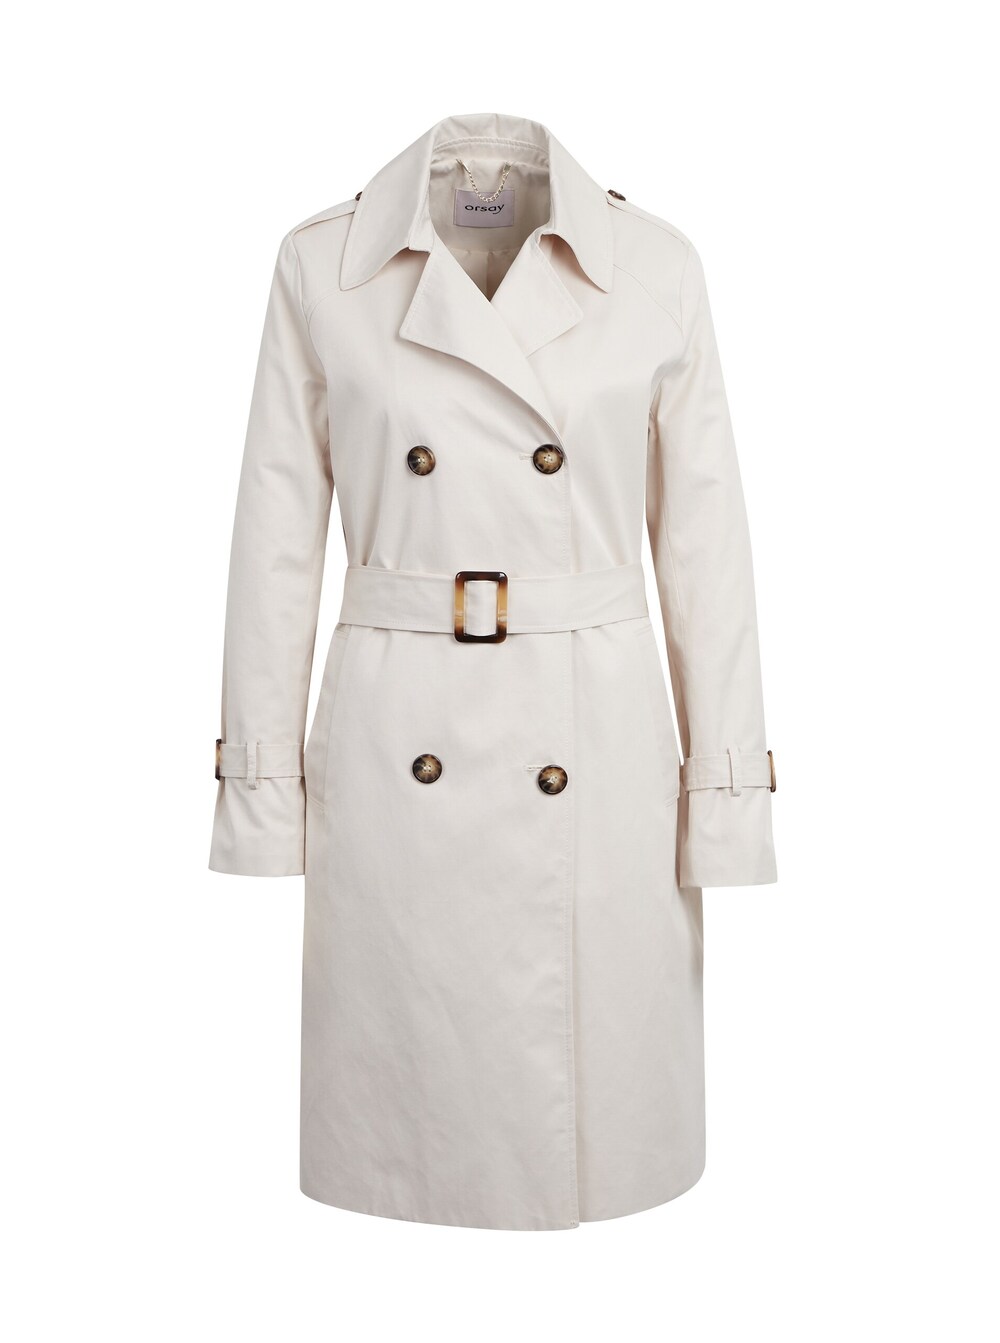 Межсезонное пальто Orsay, крем межсезонное пальто orsay светло серый